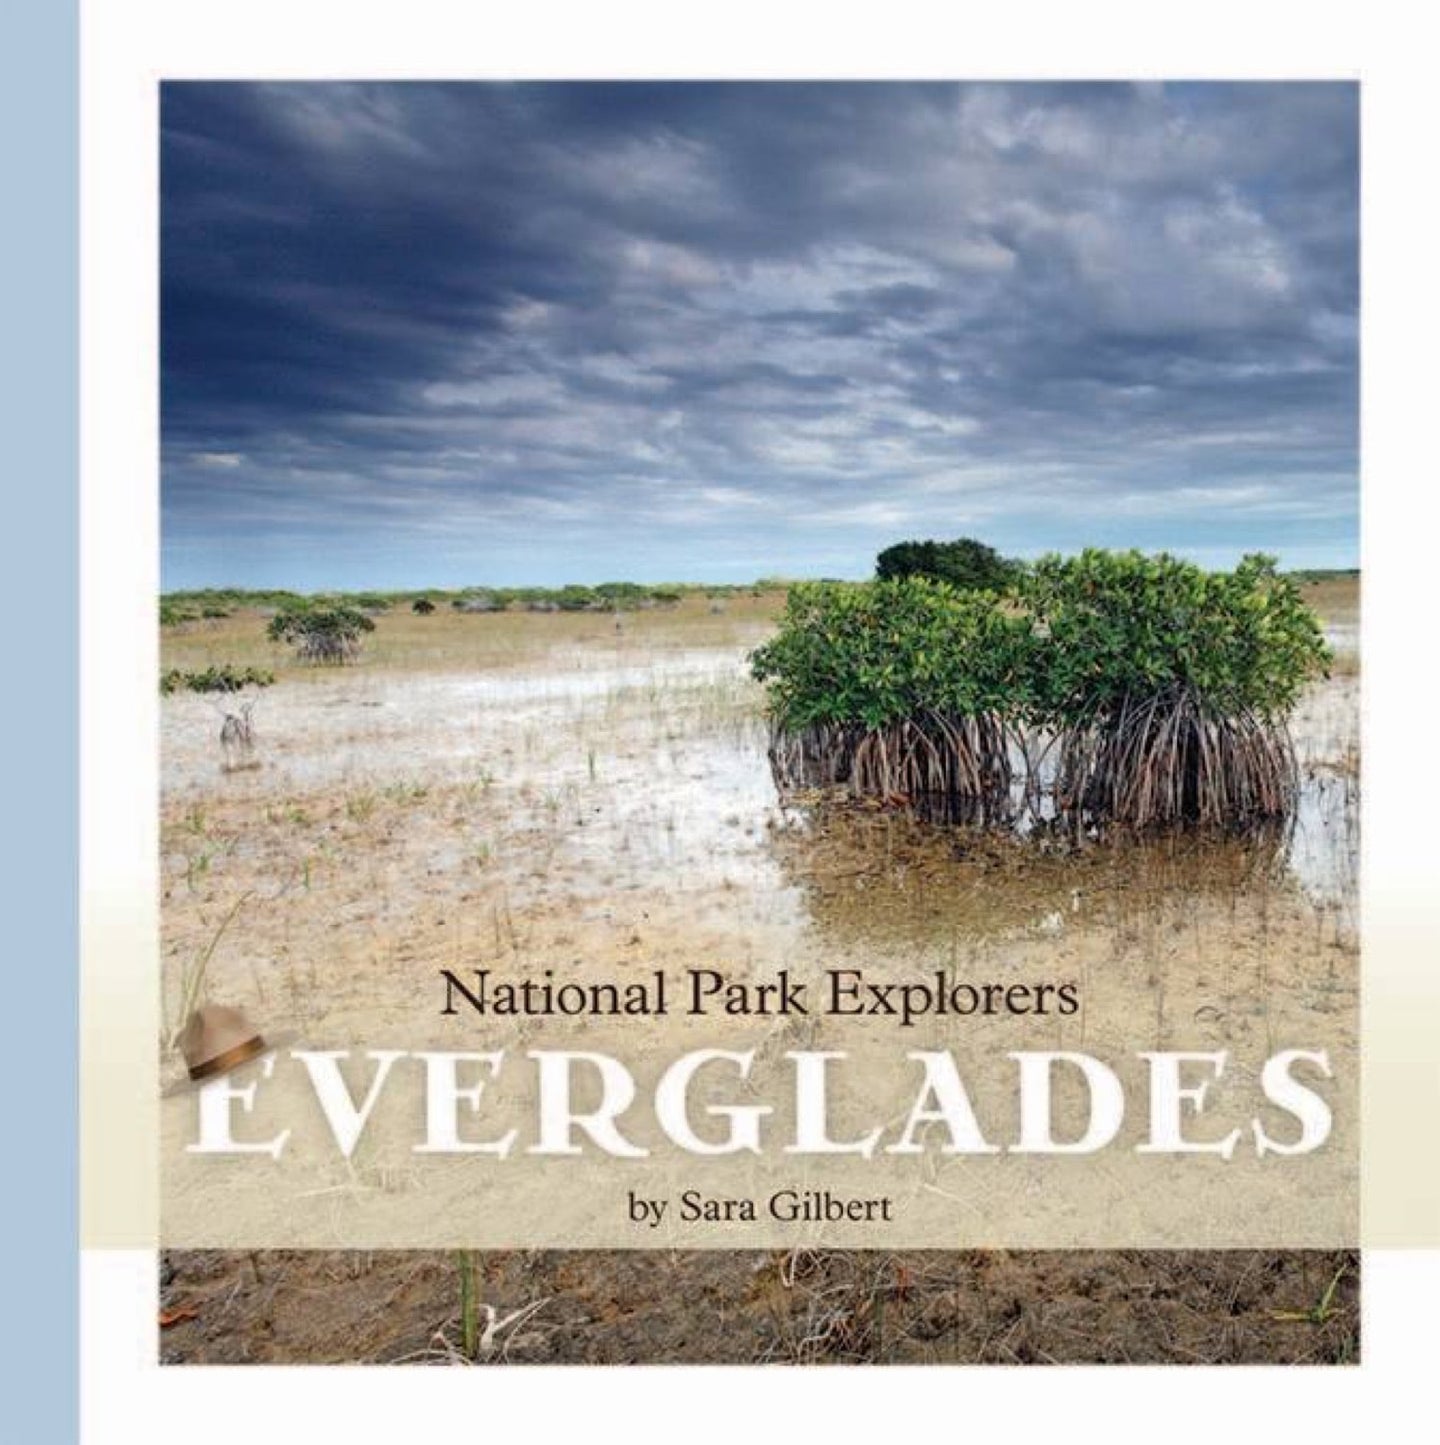 National Park Explorers: Everglades